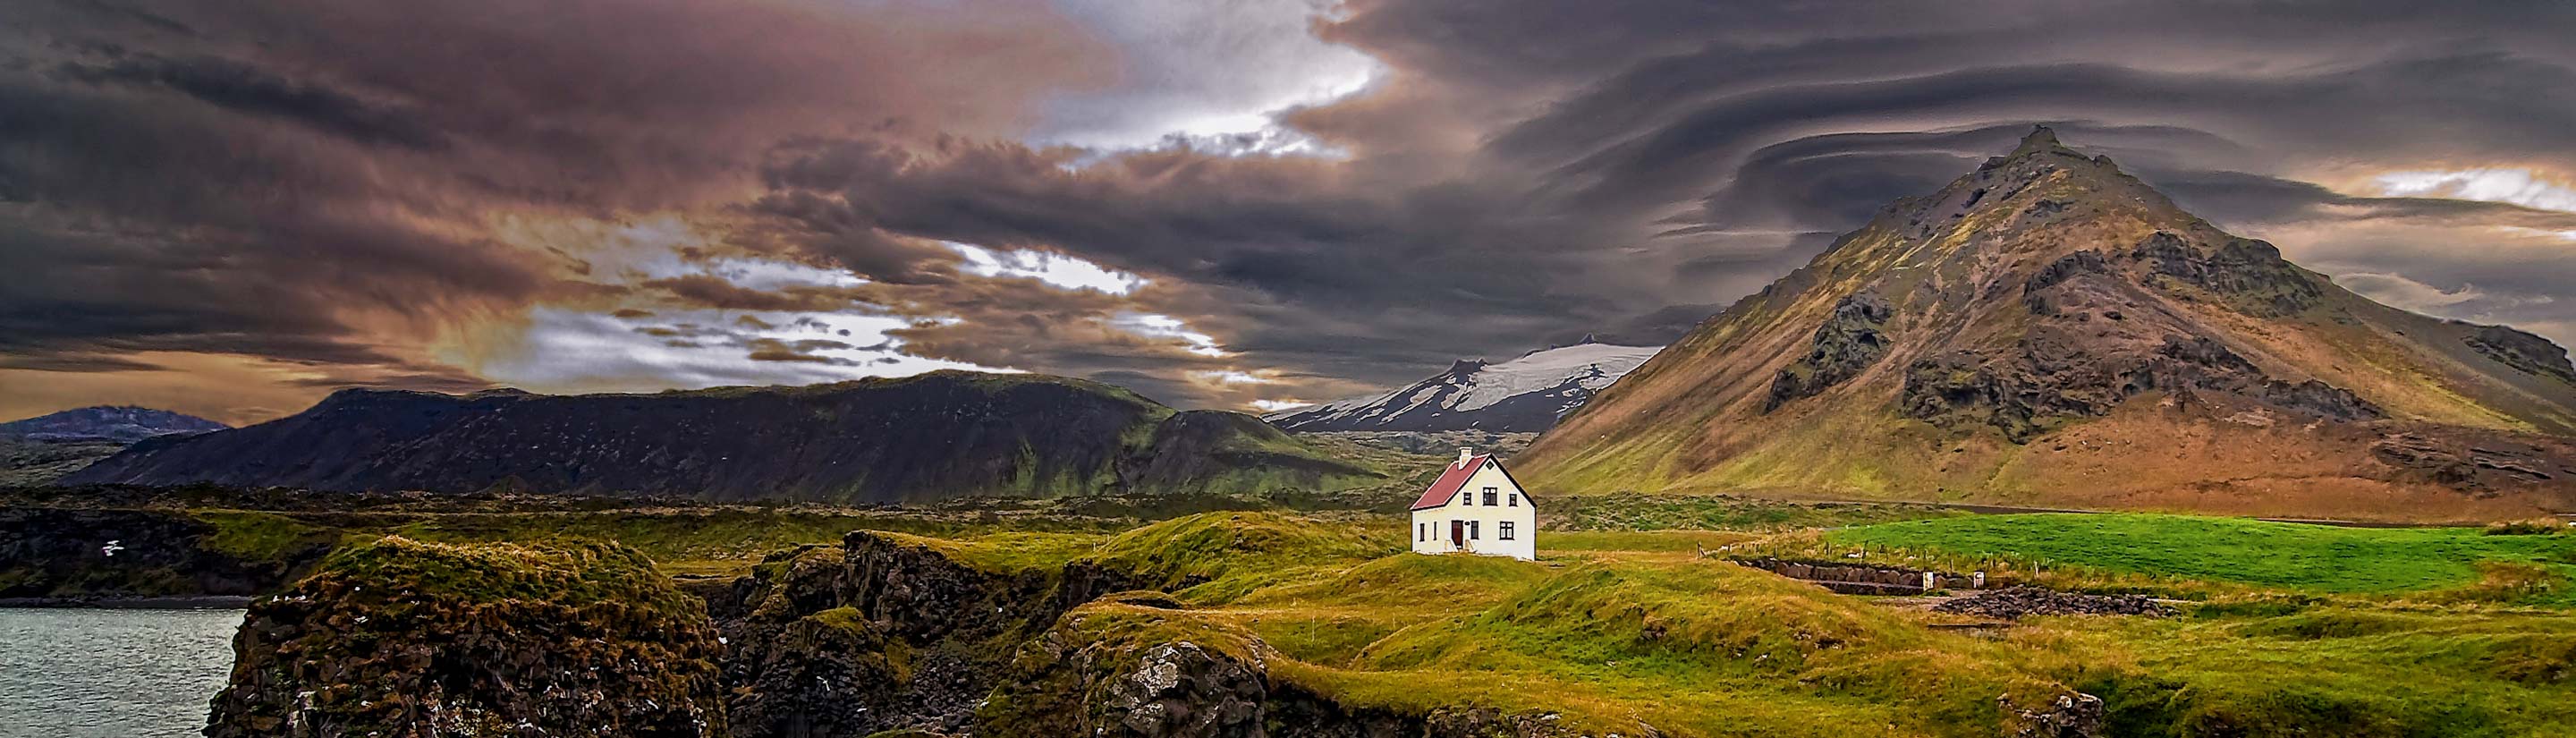 Island-Reise: Kräftespiel der Elemente